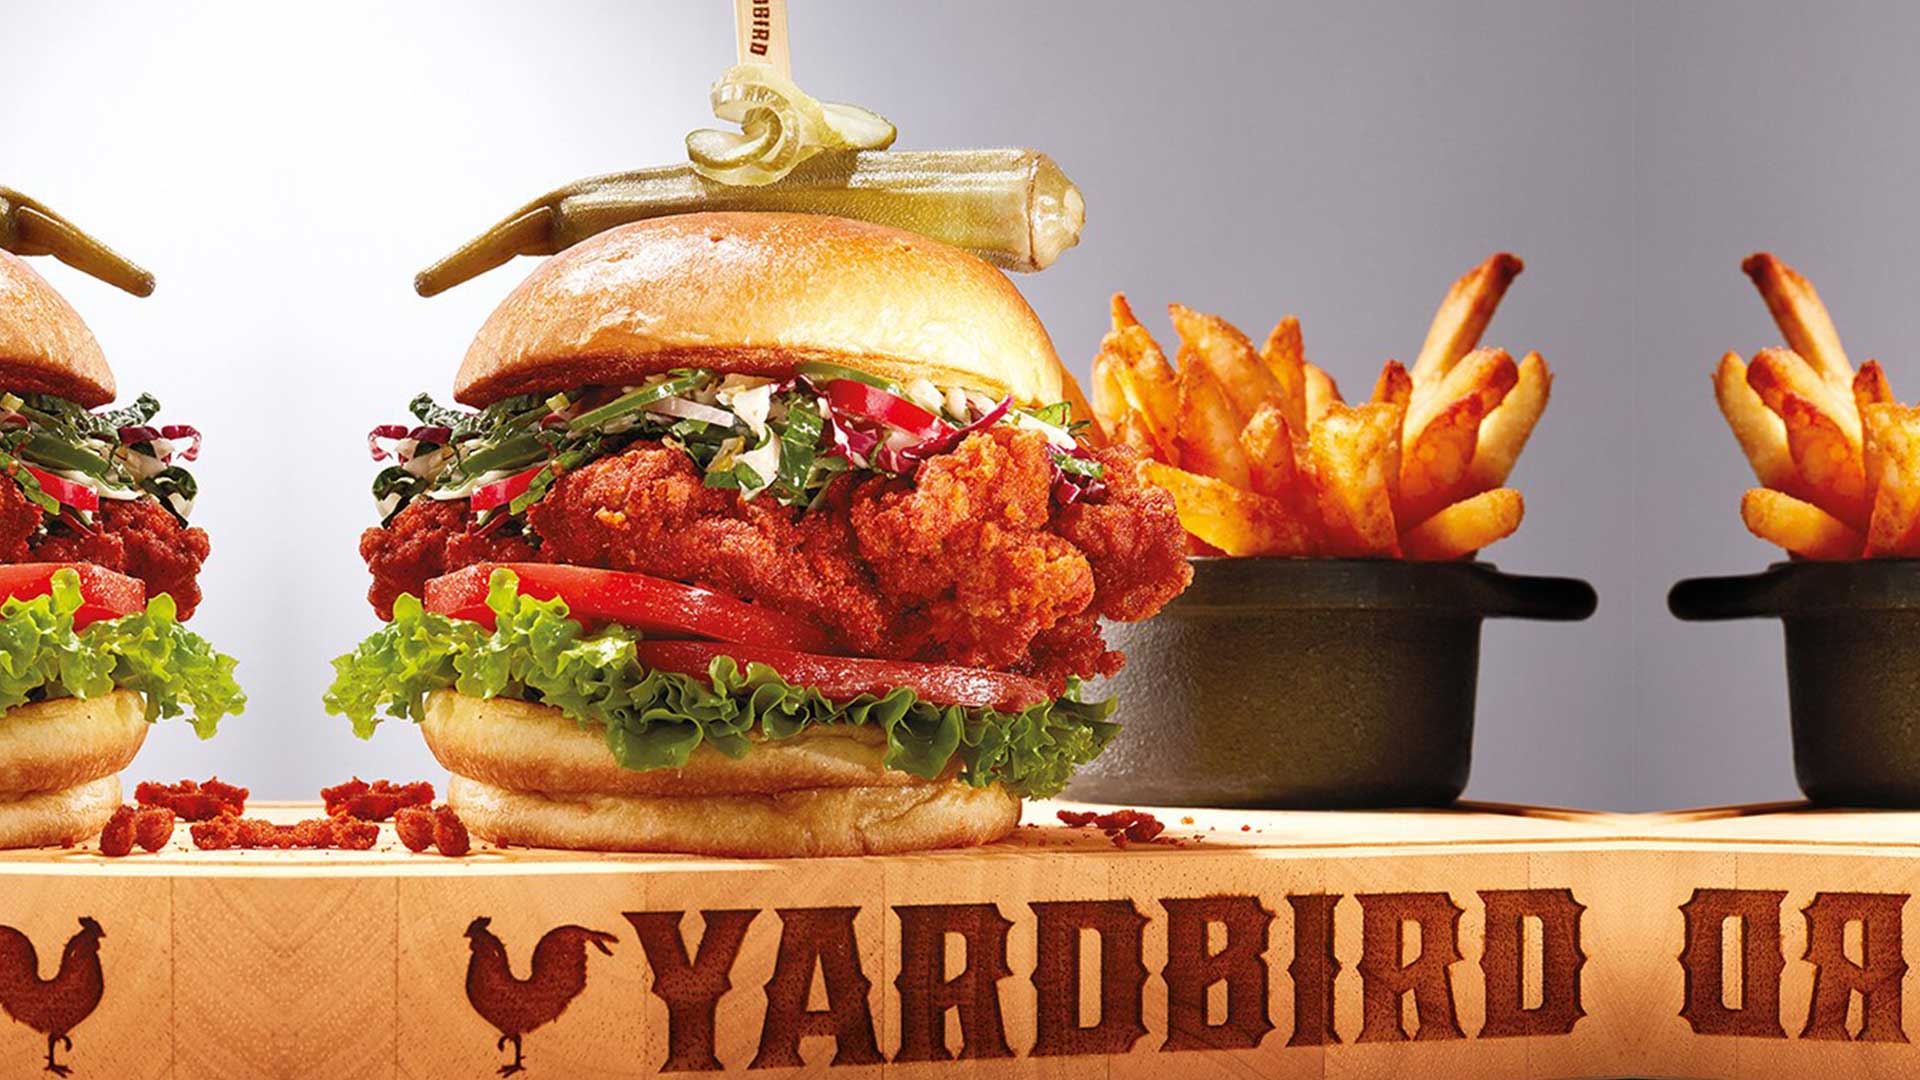 Yardbird Chicken Sandwich